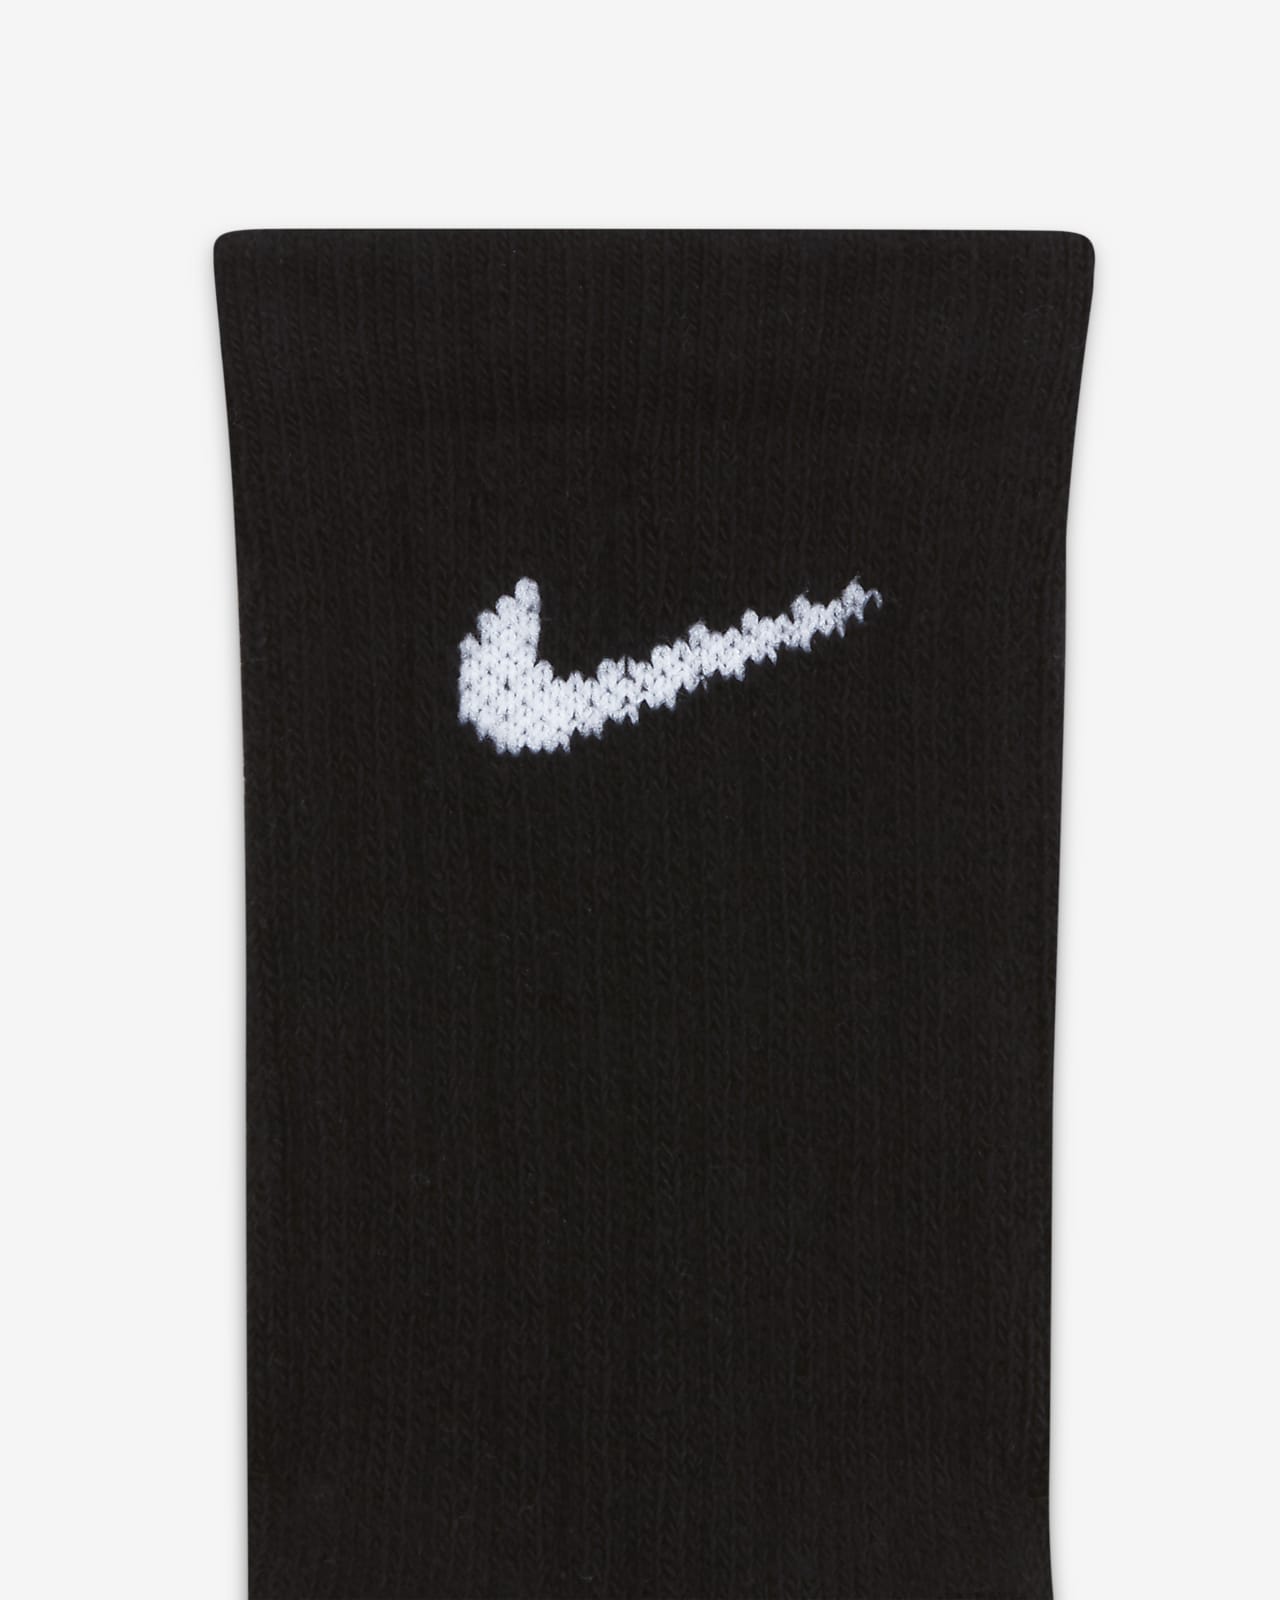 Nike Dri-FIT Little Kids' Crew Socks (6 Pairs)